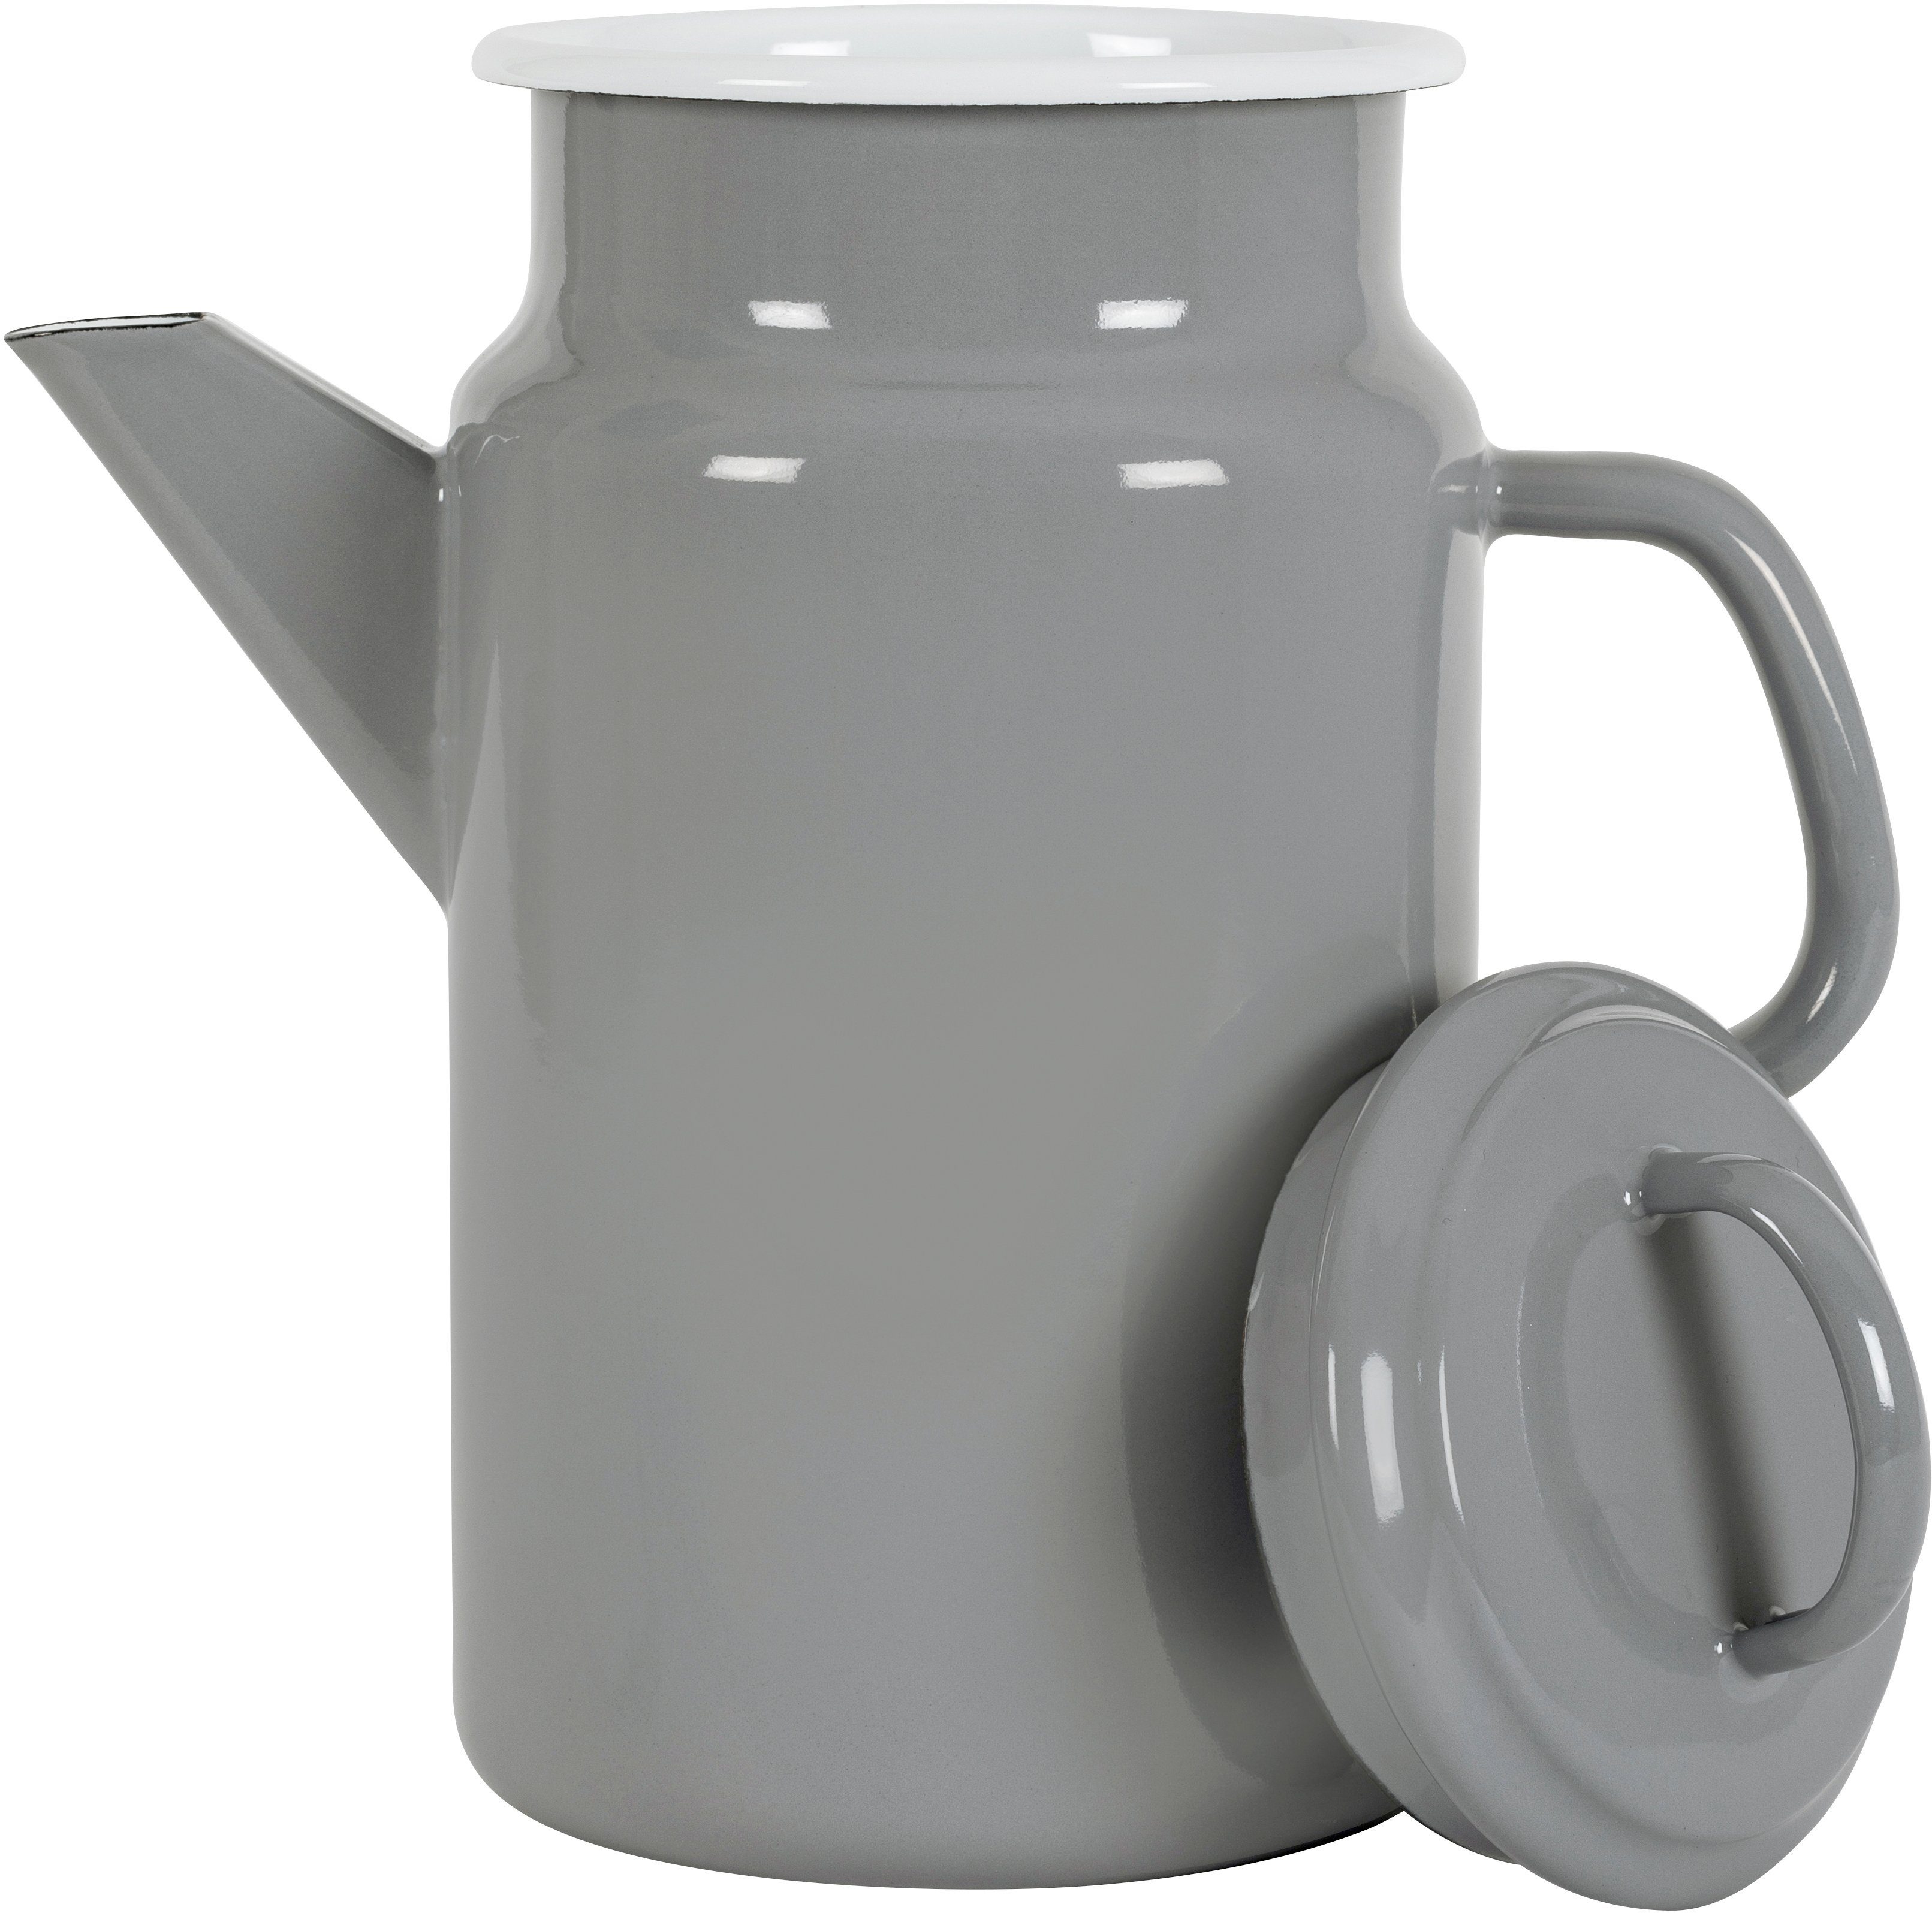 KOCKUMS® Teekanne Jernverk, 2 in l, Emaille, einer Nachhaltigkeit Teekanne Retro-Design und grau vereint